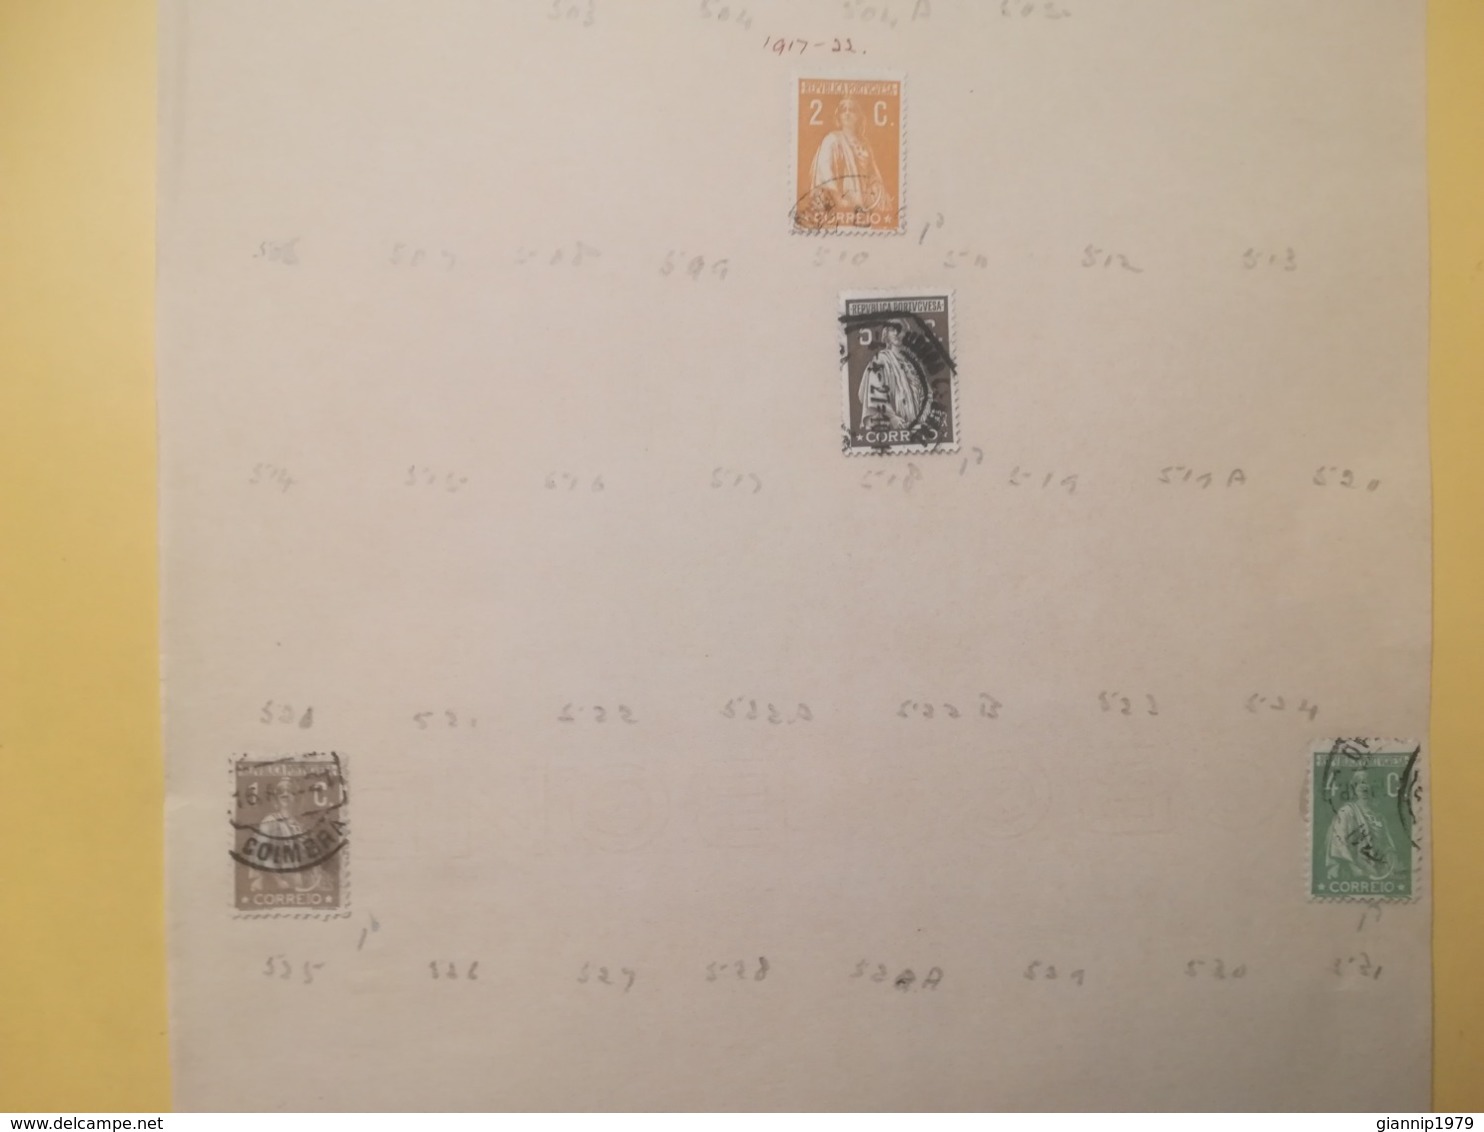 PAGINA PAGE ALBUM PORTOGALLO PORTUGAL 1912 CERES ATTACCATI PAGE WITH STAMPS COLLEZIONI LOTTO LOTS - Collections